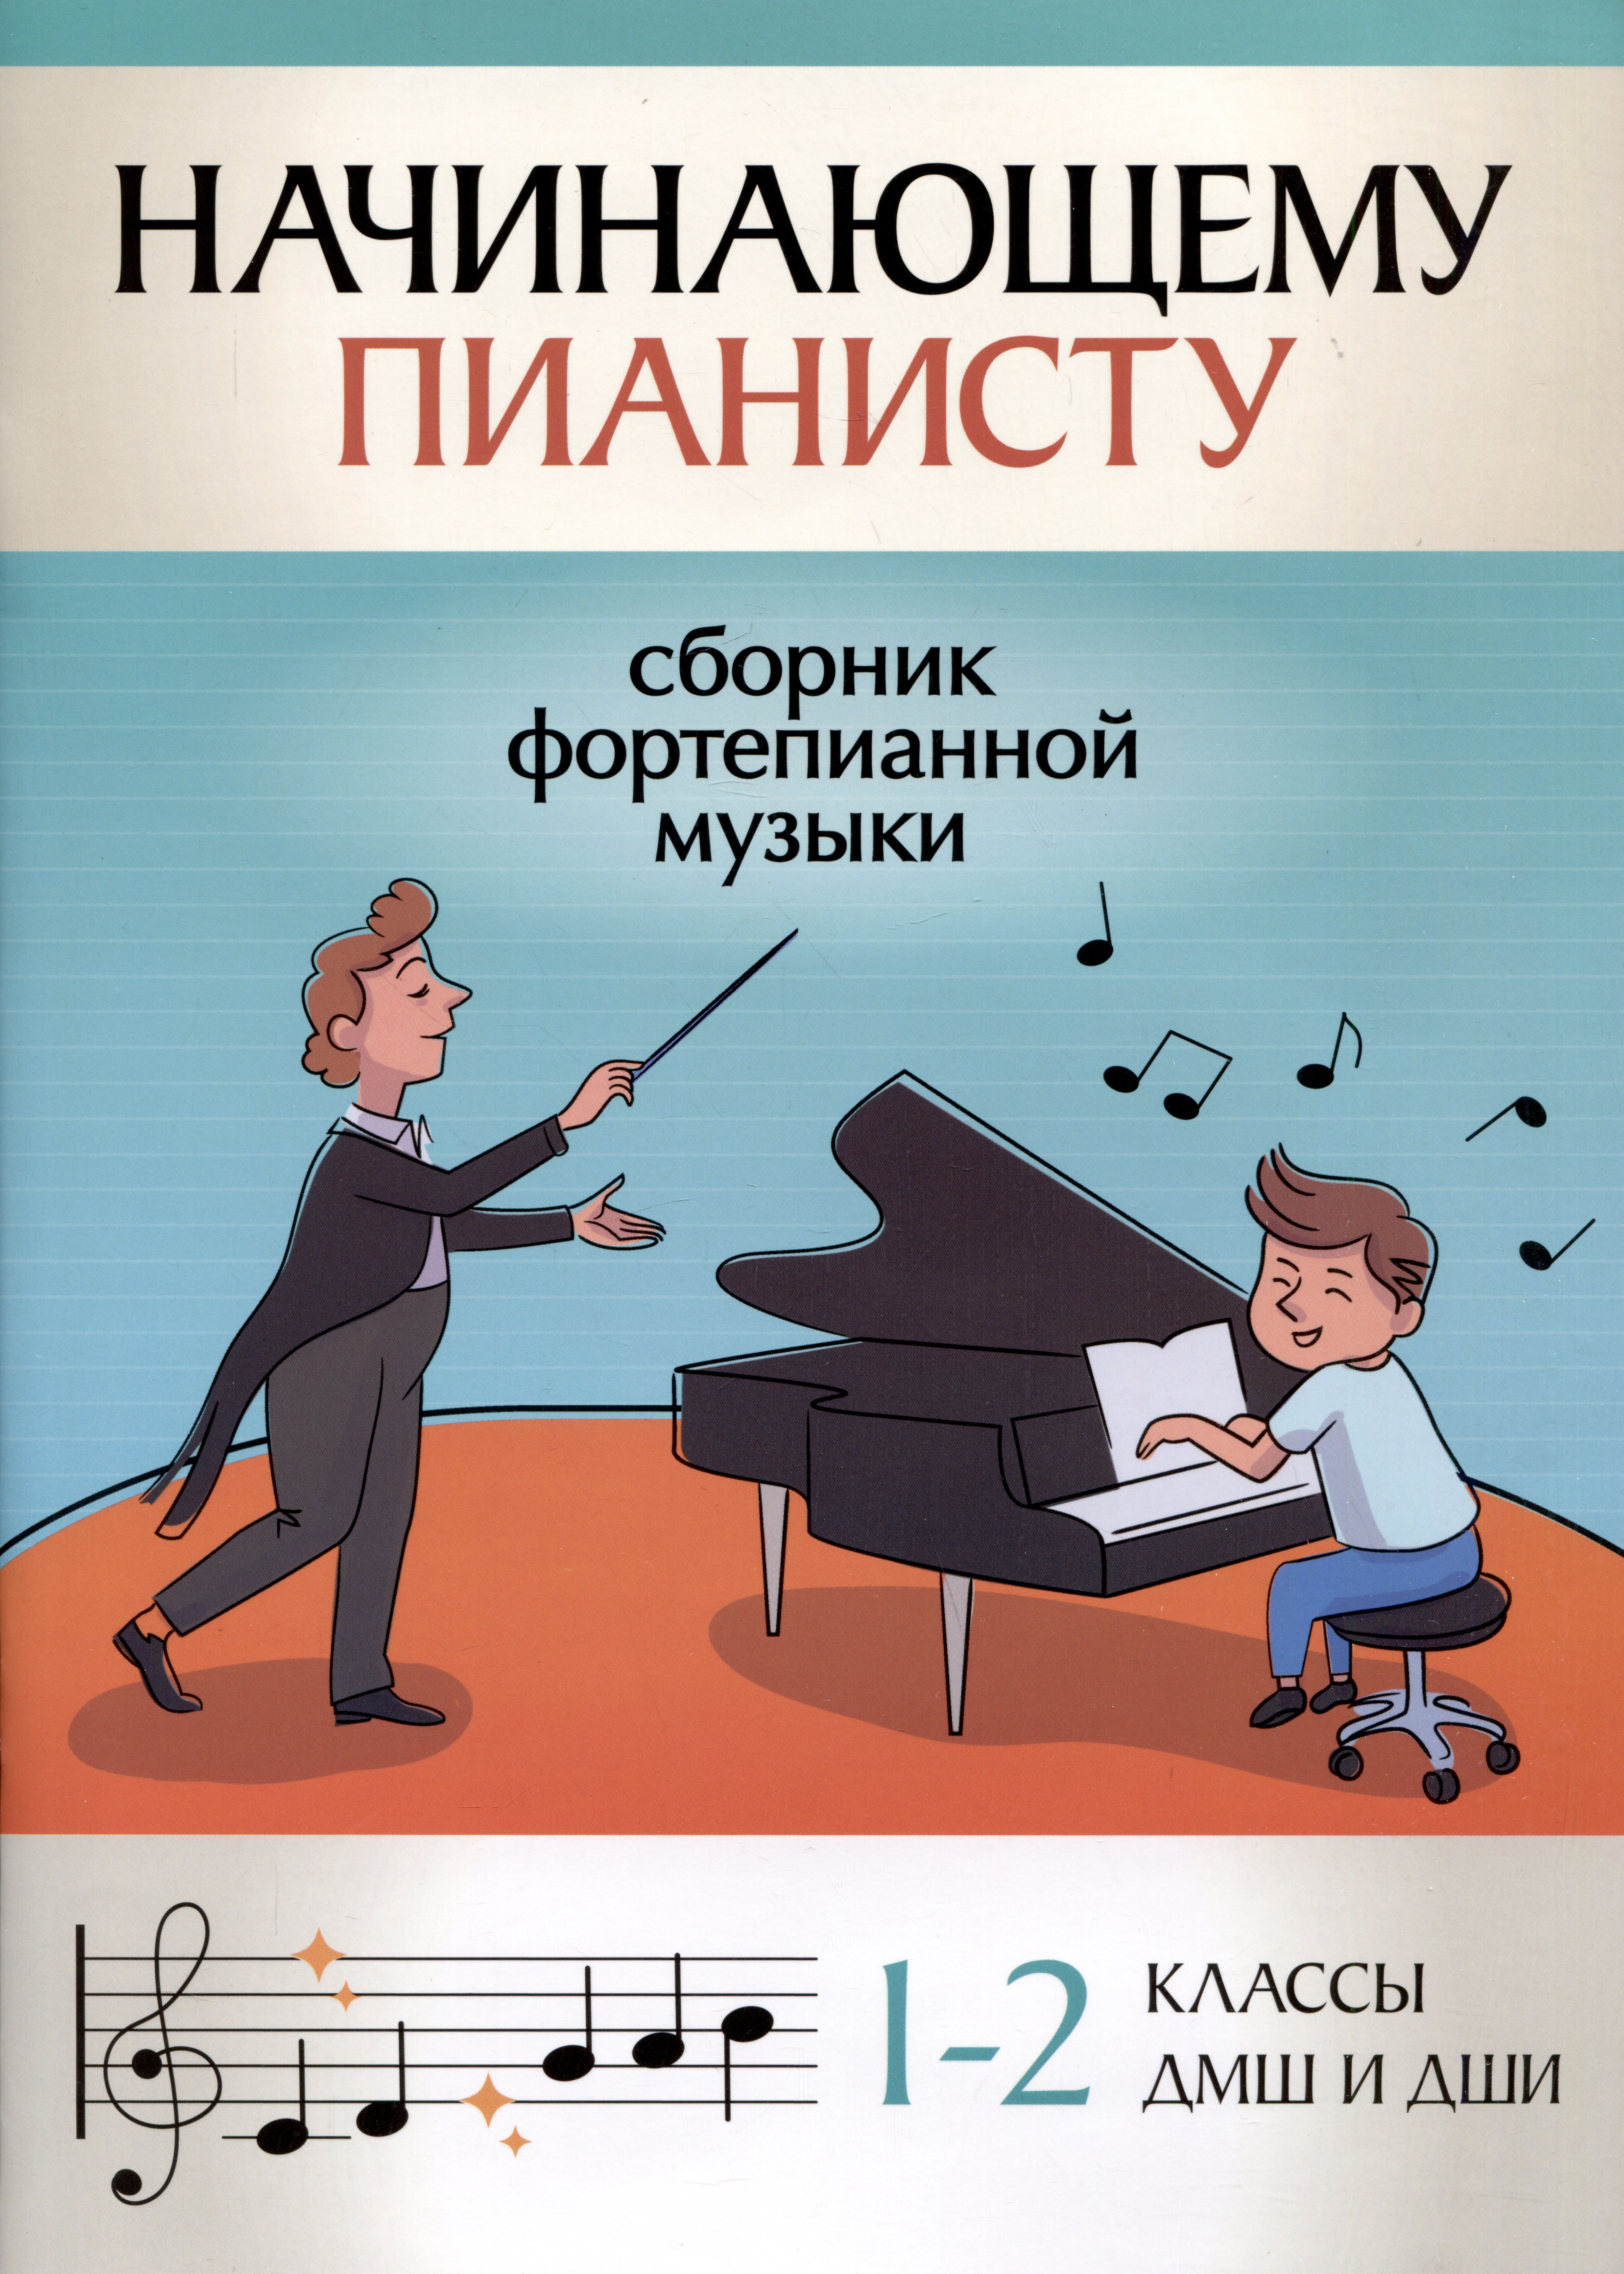 Начинающему пианисту: сборник фортепианной музыки: 1-2 классы ДМШ и ДШИ